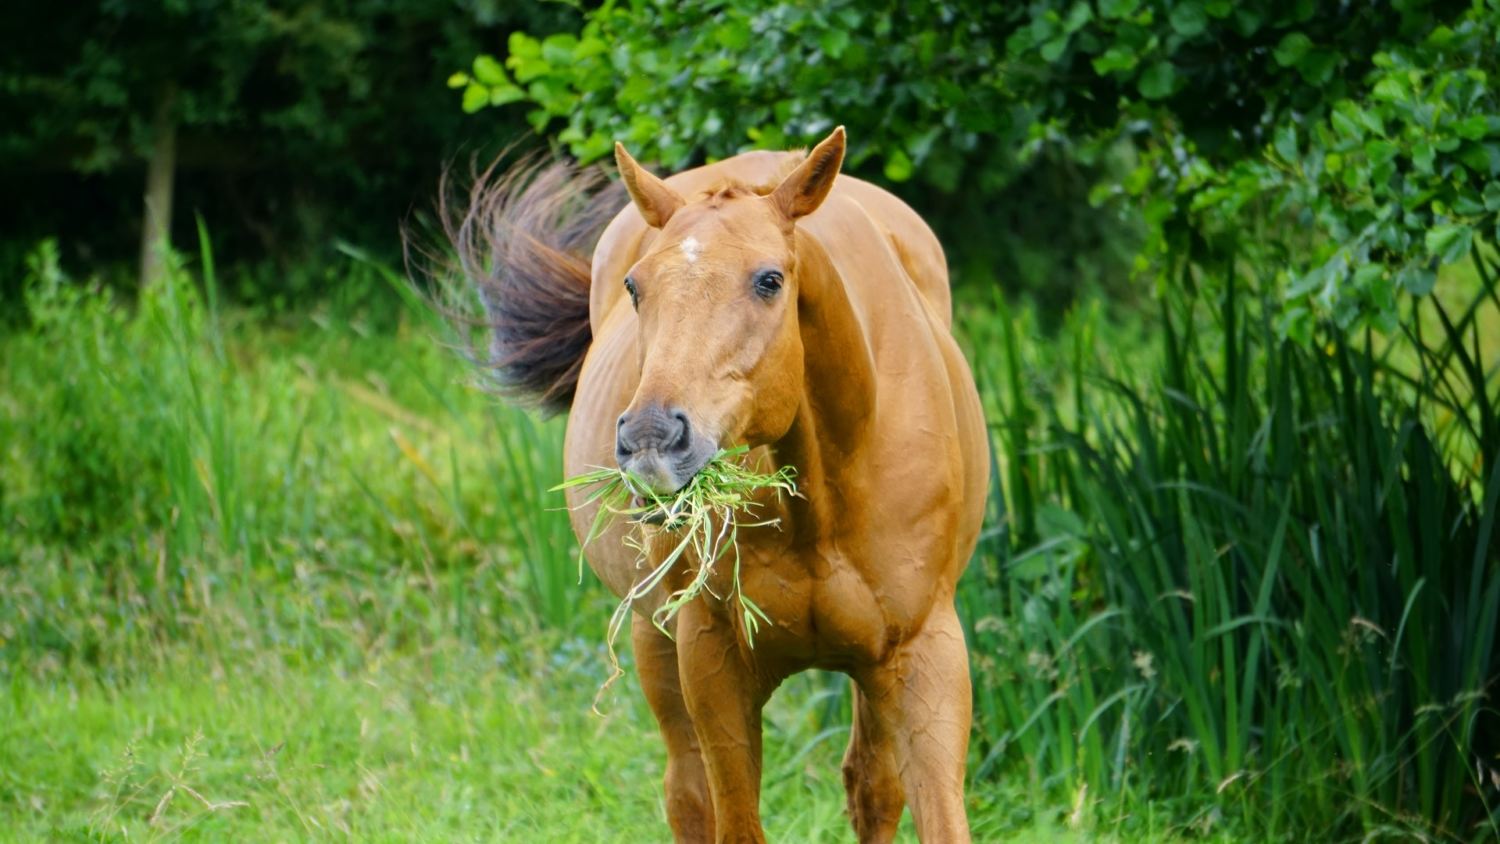 Conheça 4 plantas venenosas para o seu cavalo - Organnact